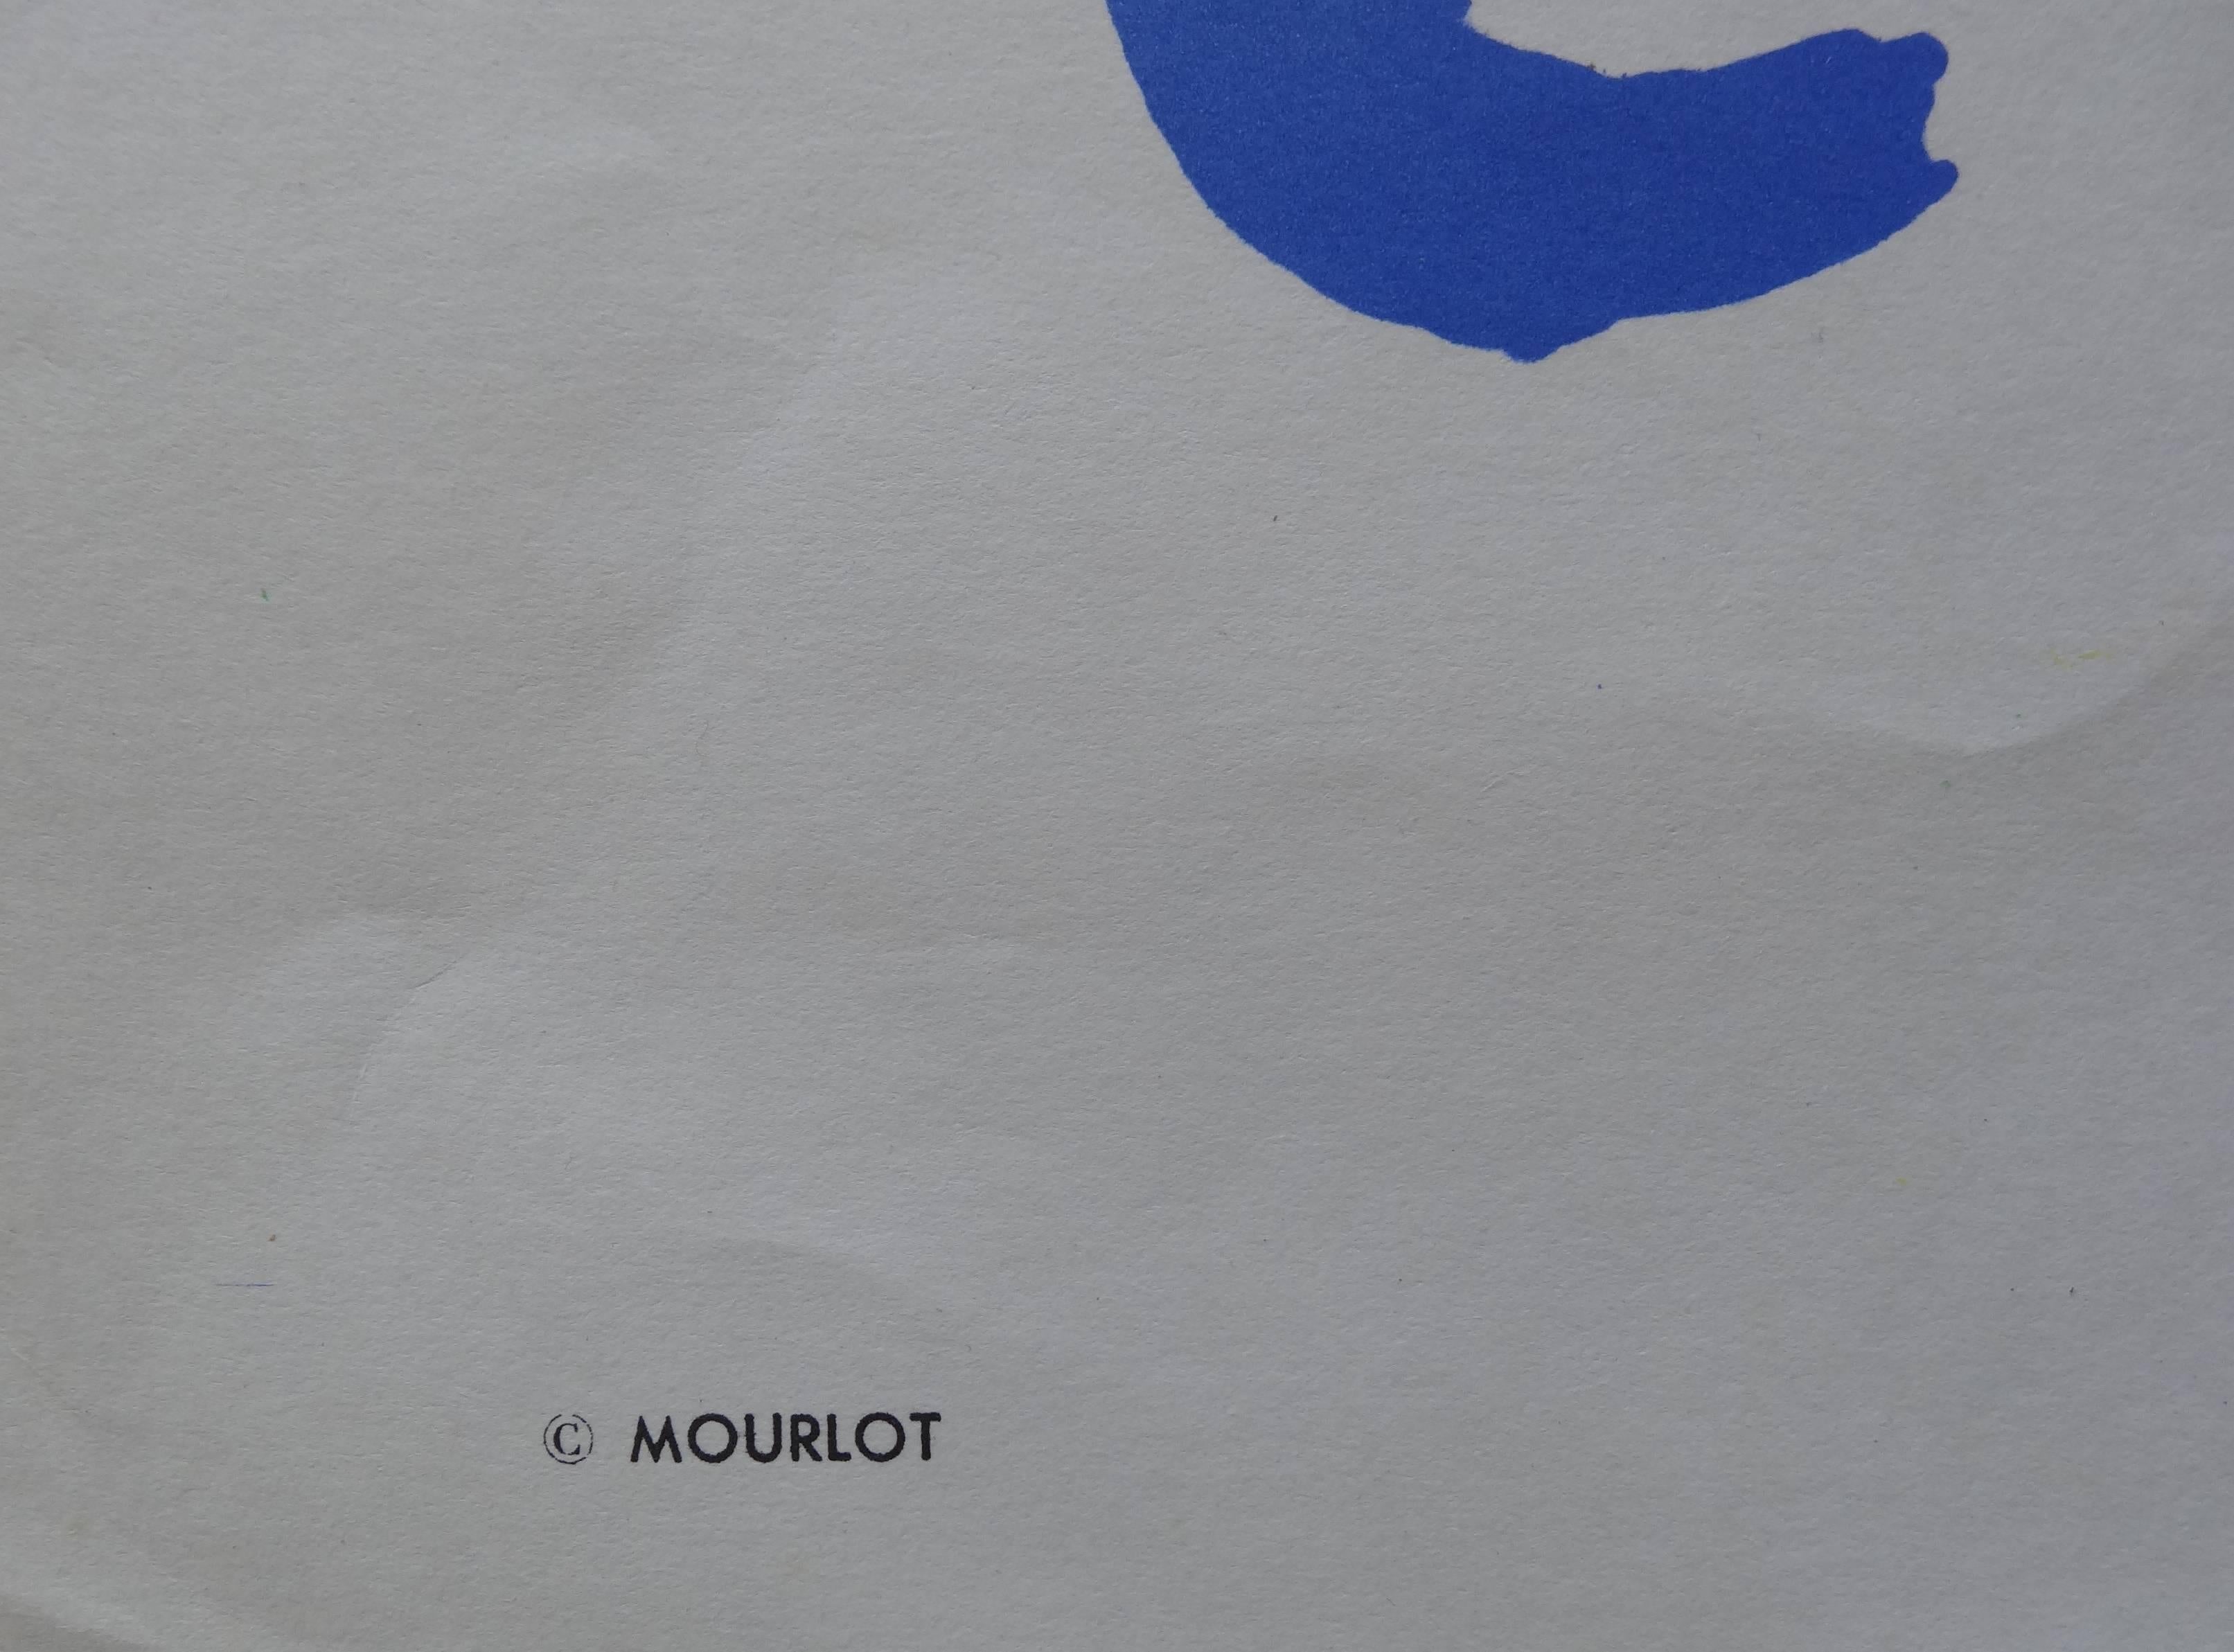 Artist as a Phoenix - Original lithograph poster - Mourlot 1